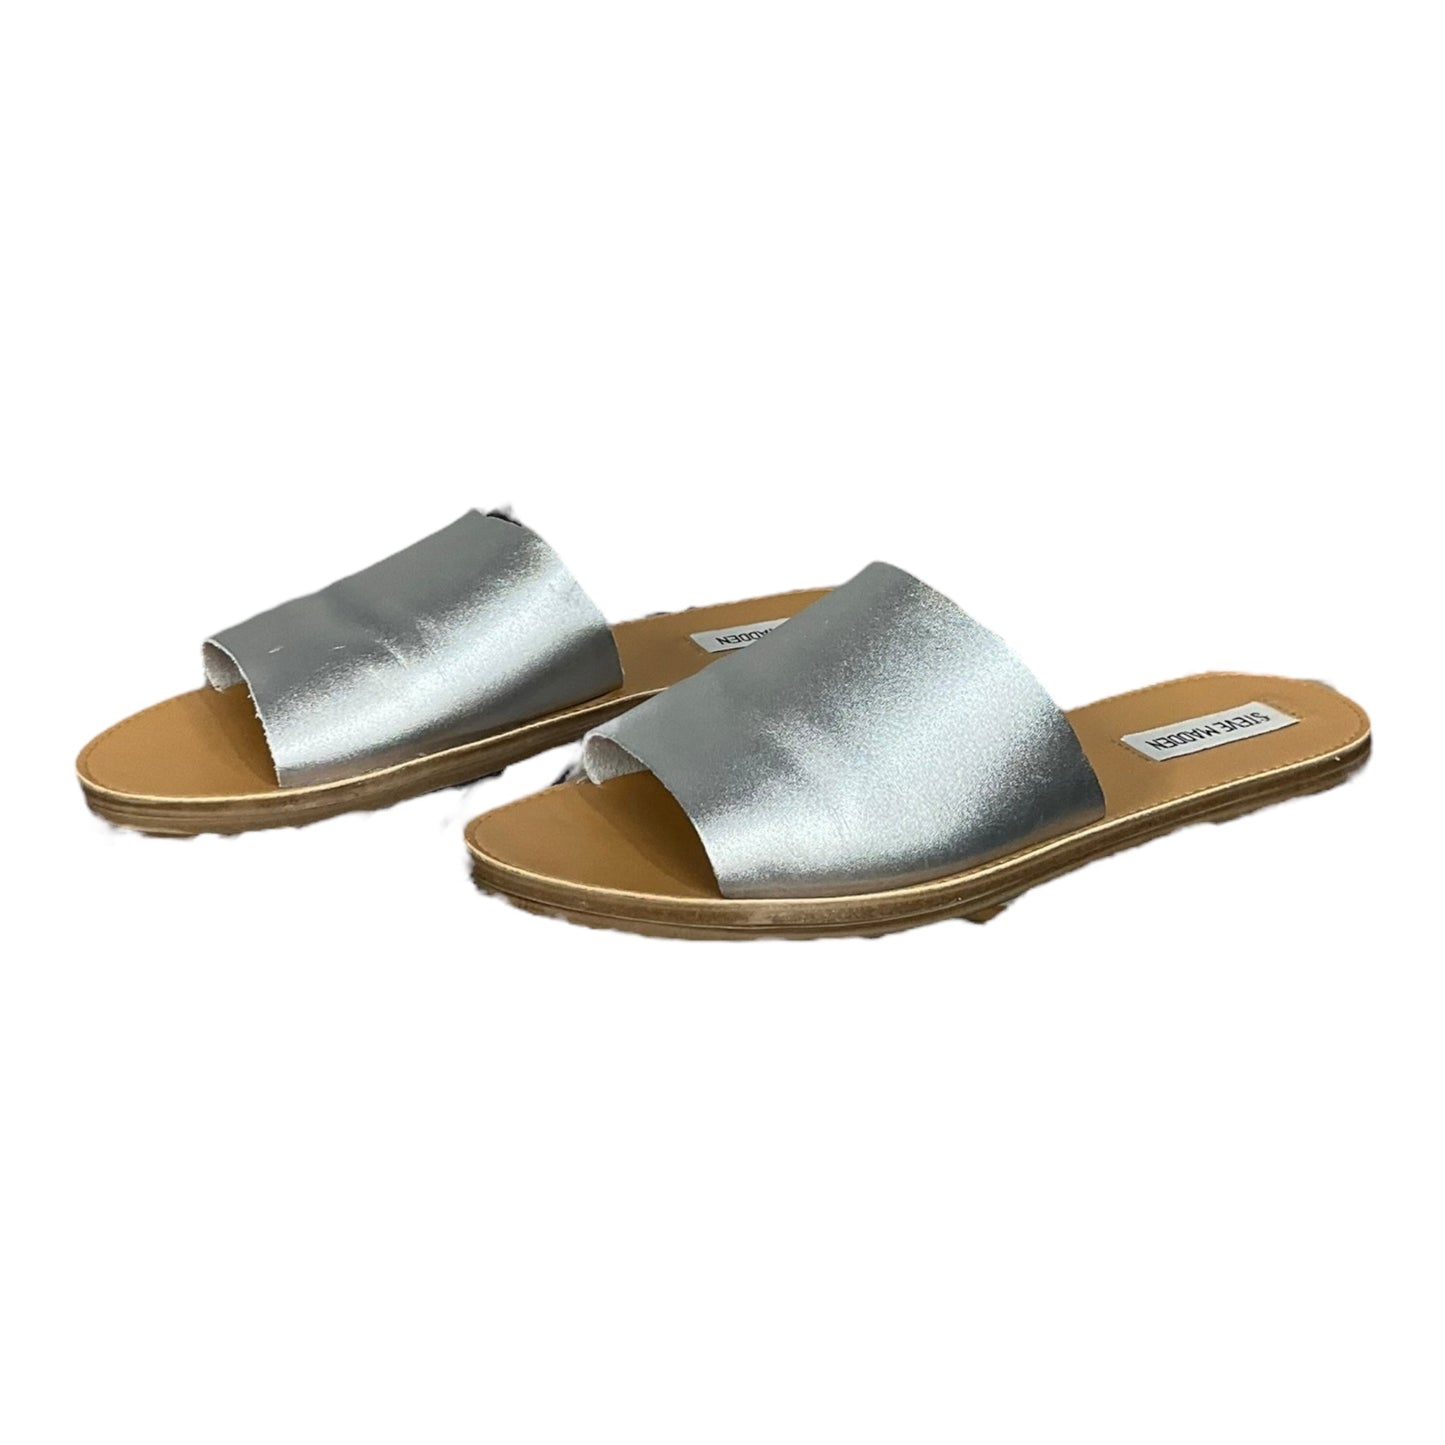 Silver Sandals Flats Steve Madden, Size 8